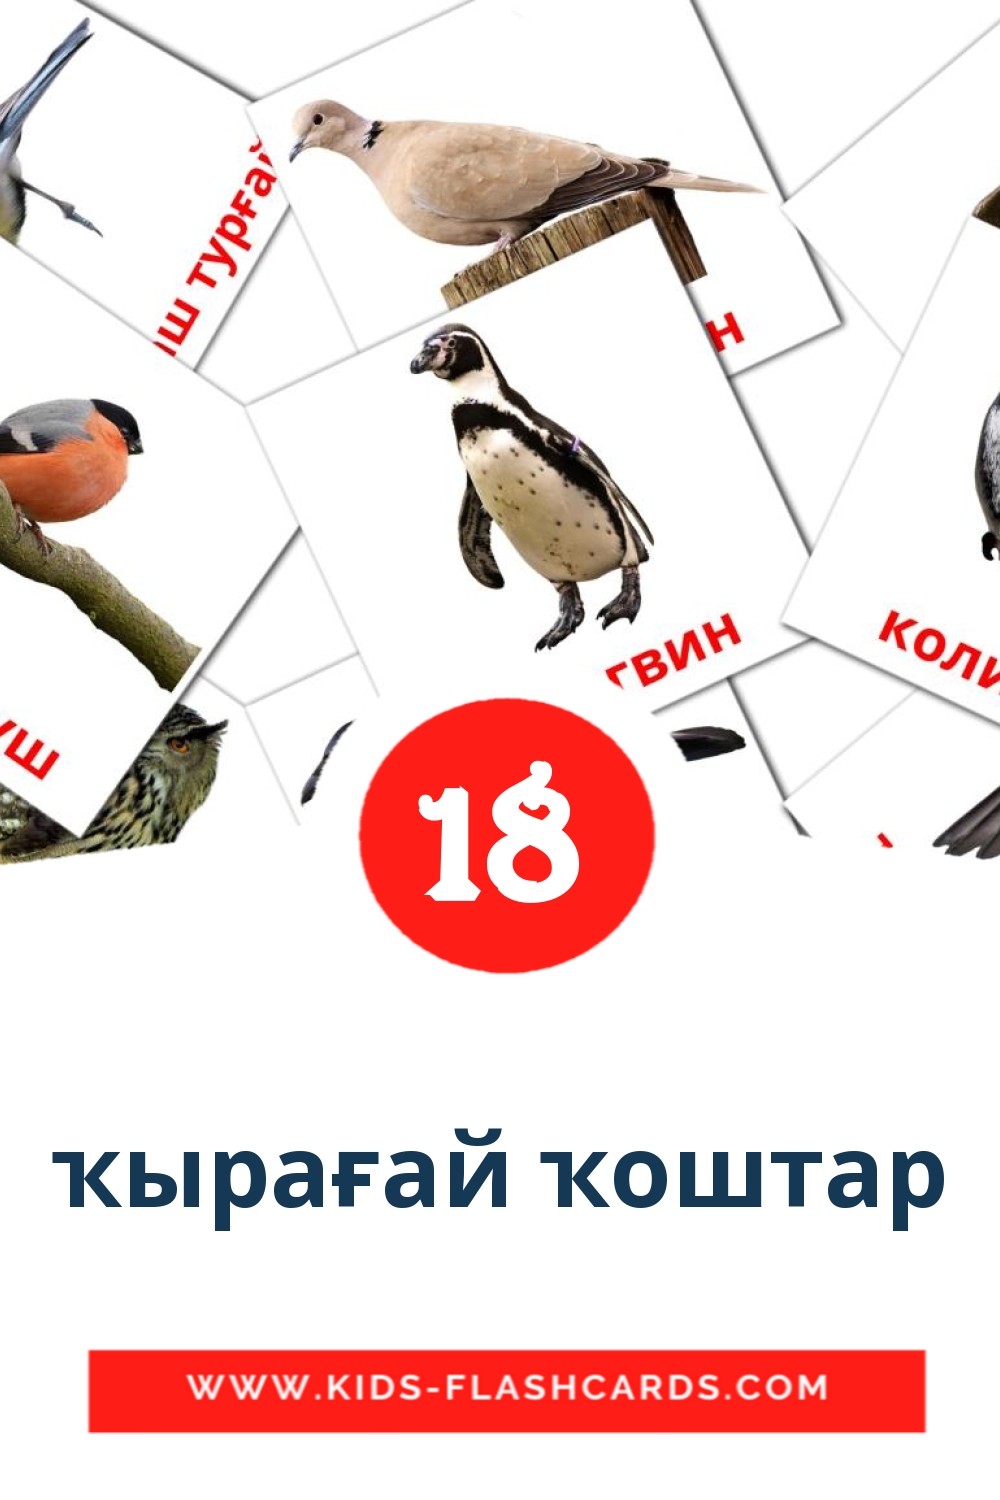 18 Cartões com Imagens de ҡырағай ҡоштар para Jardim de Infância em bashkir